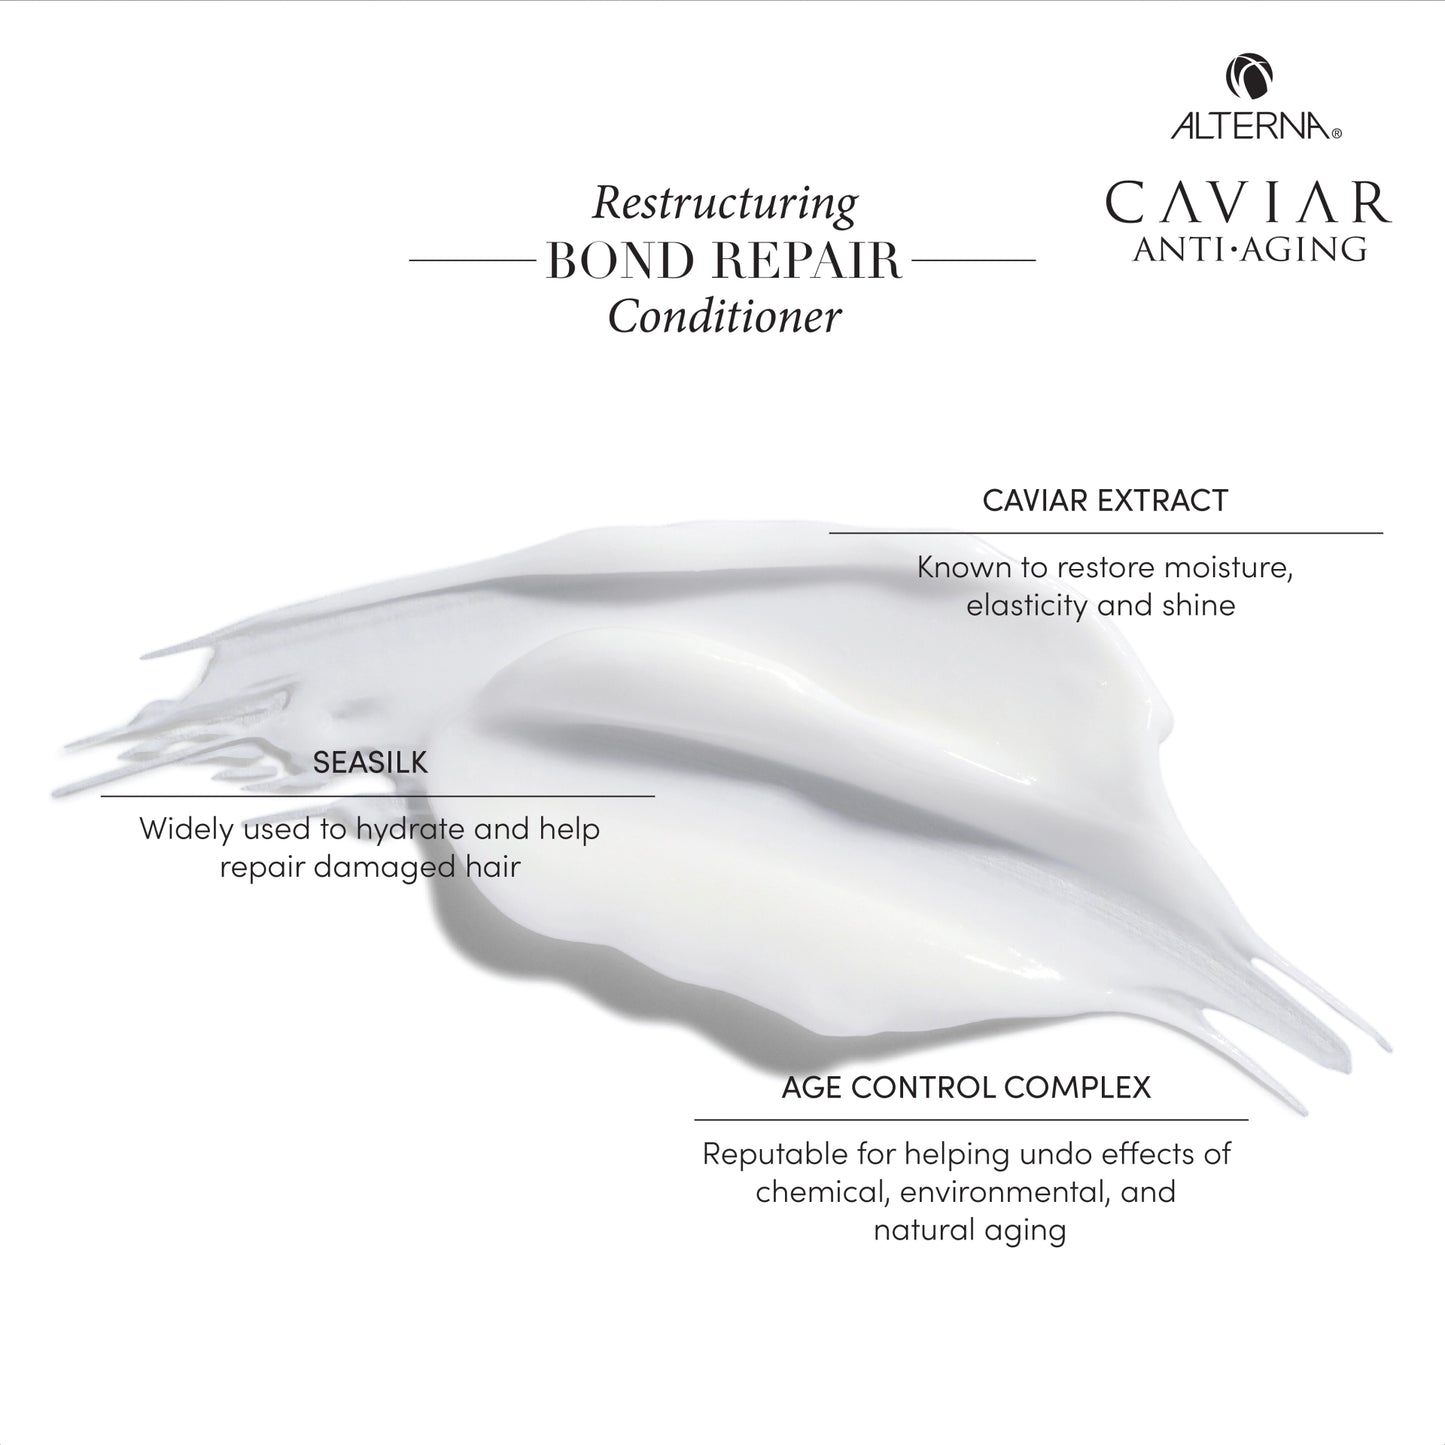 Caviar Anti-Aging Restructuring Bond Repair Conditioner 8.5oz